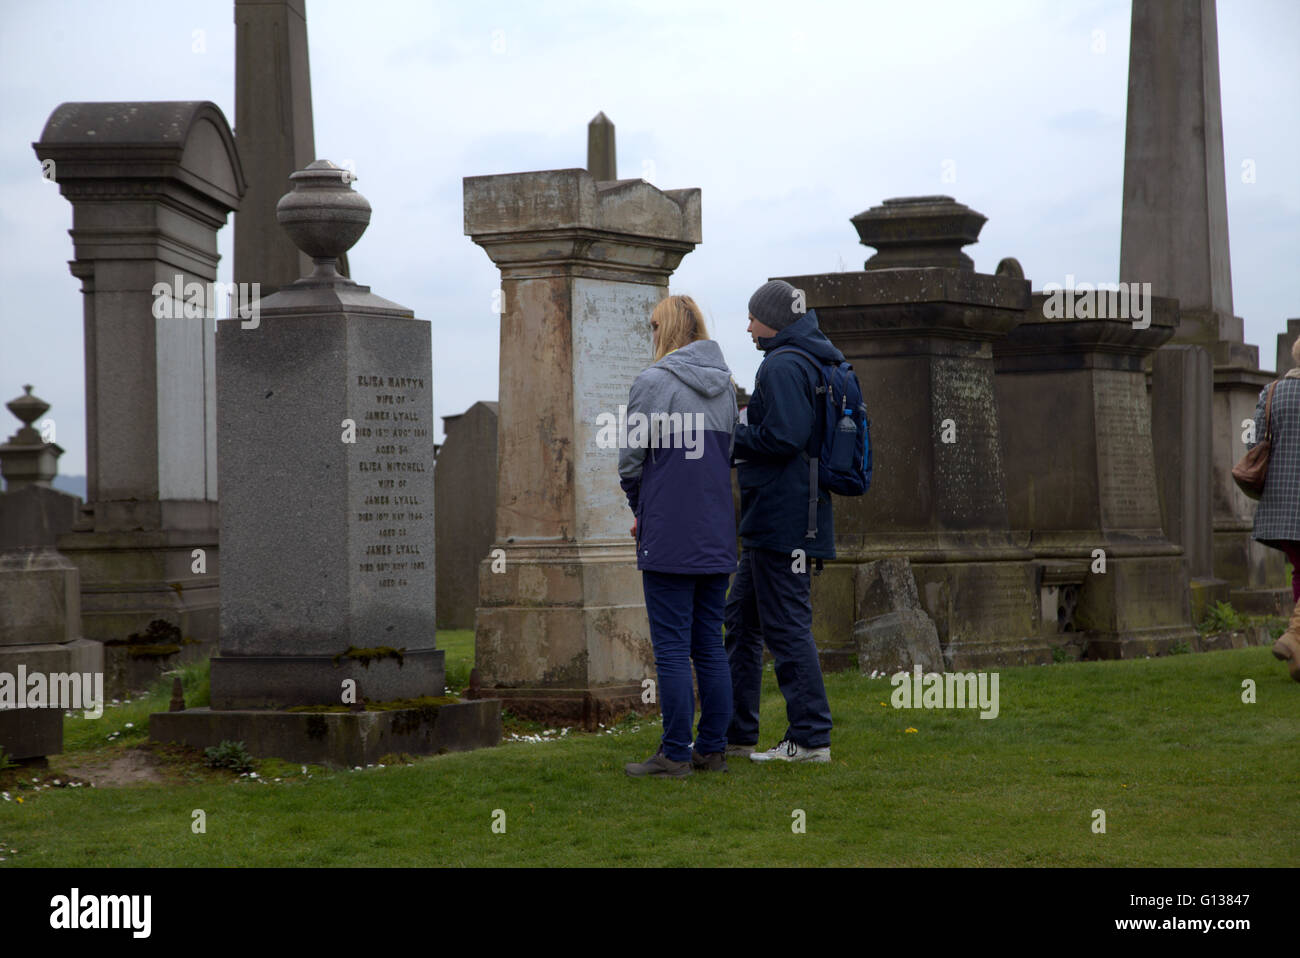 El hombre y la mujer joven está respectivamente delante de la tumba de piedra en la necrópolis de Glasgow, Escocia, Reino Unido Foto de stock